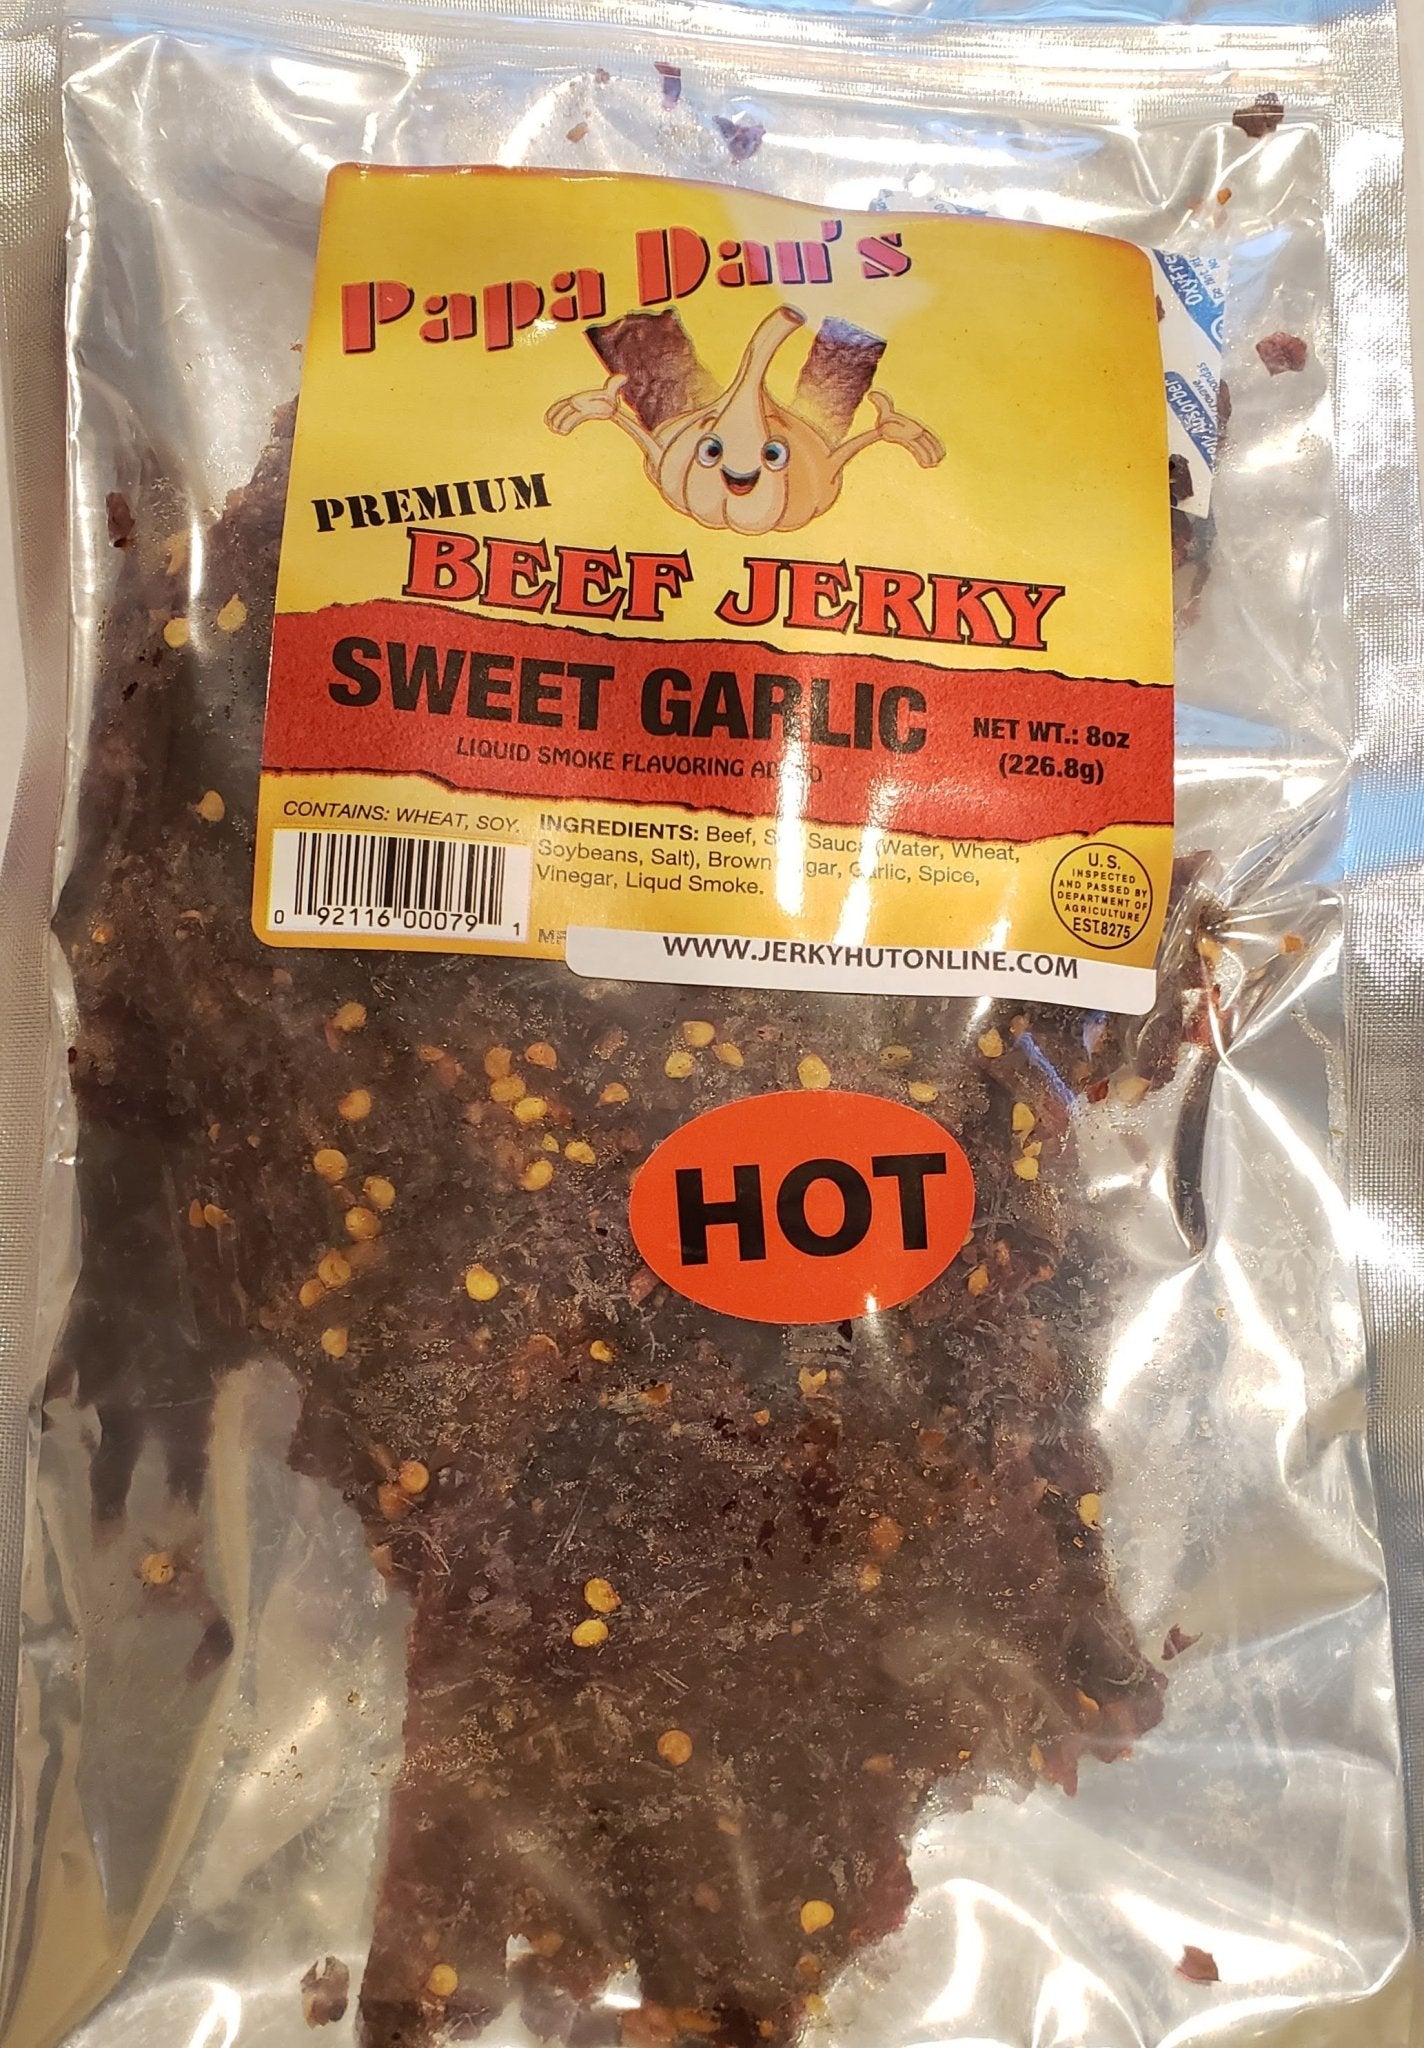 Spicy Premium Cut Beef Jerky